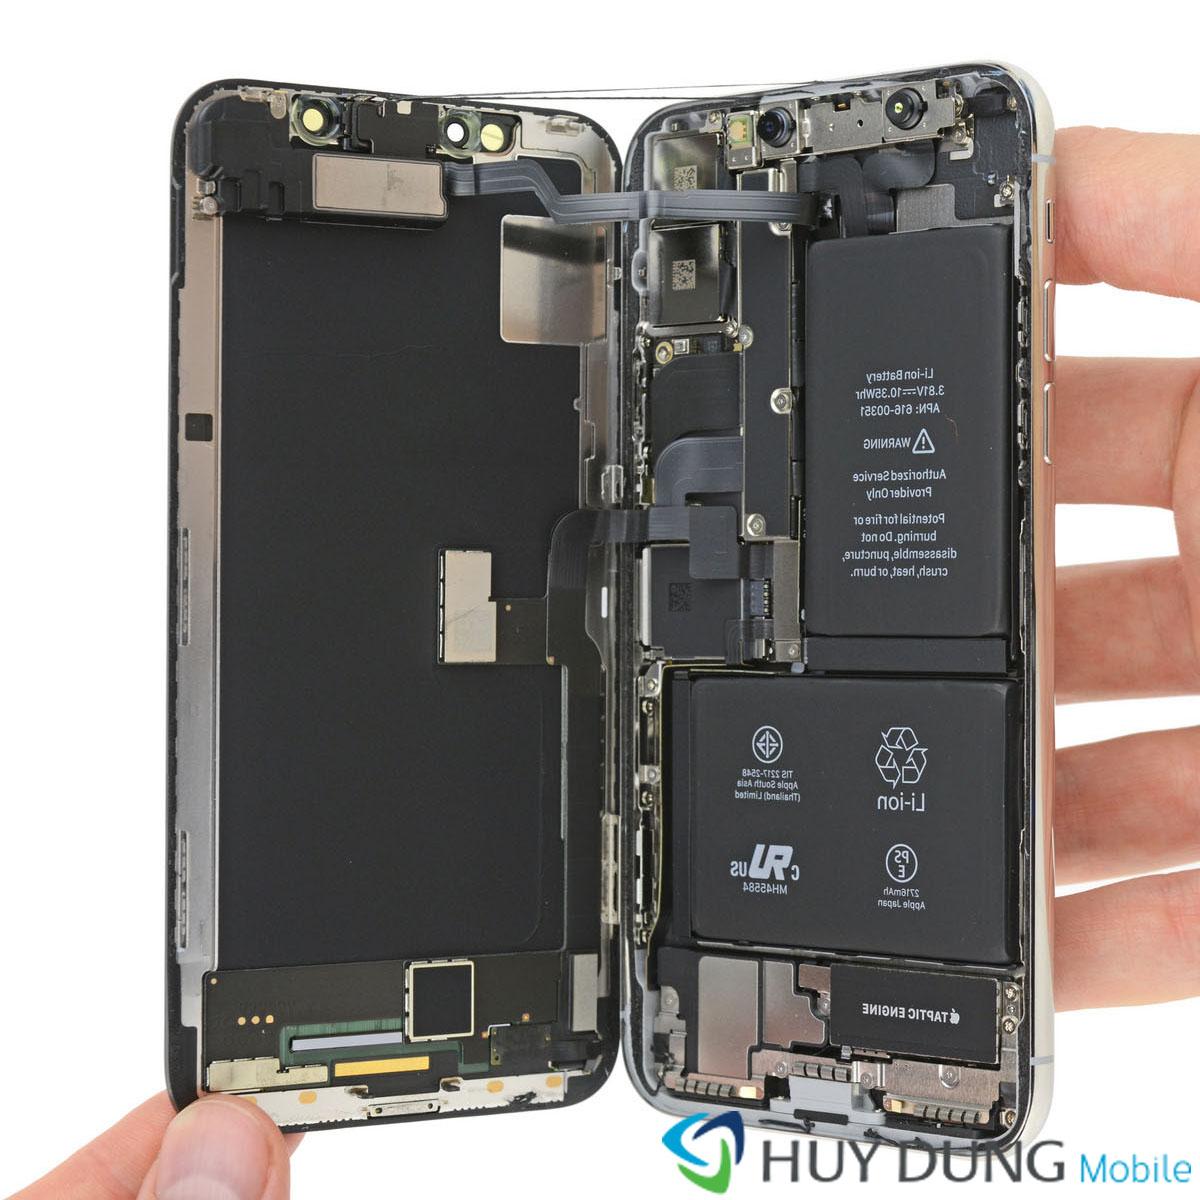 Sửa iPhone X bị mất nguồn, sụp nguồn uy tín TPHCM